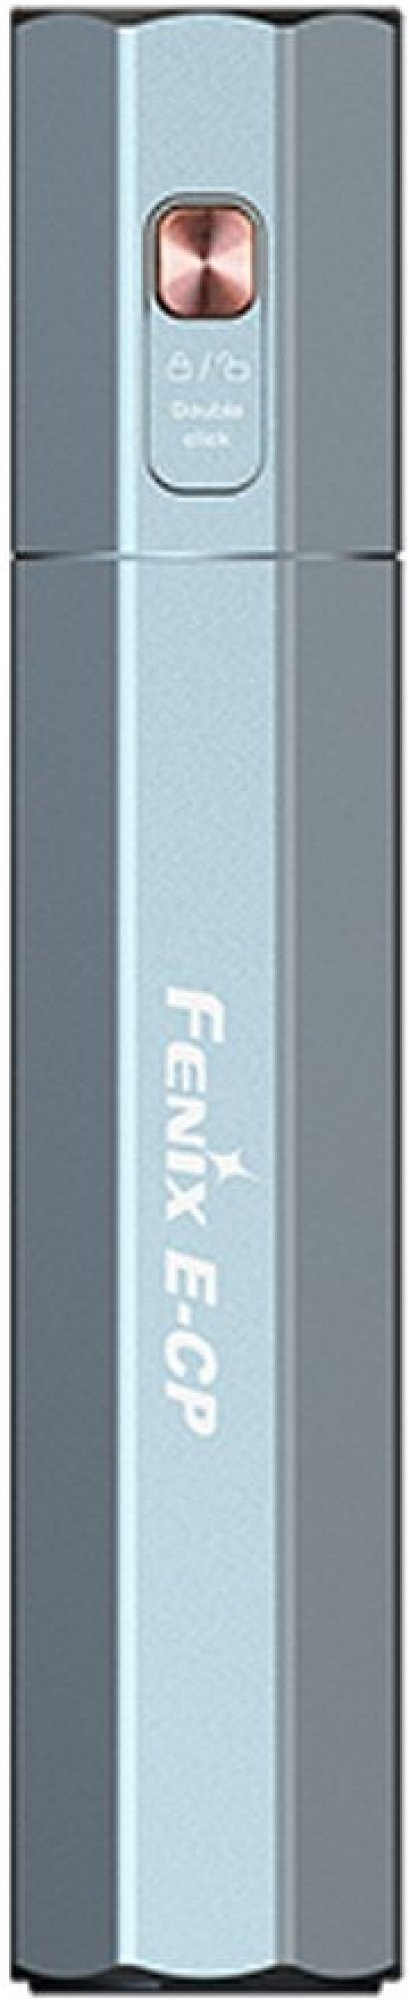 Powerbanka se svítilnou Fenix E-CP modrá